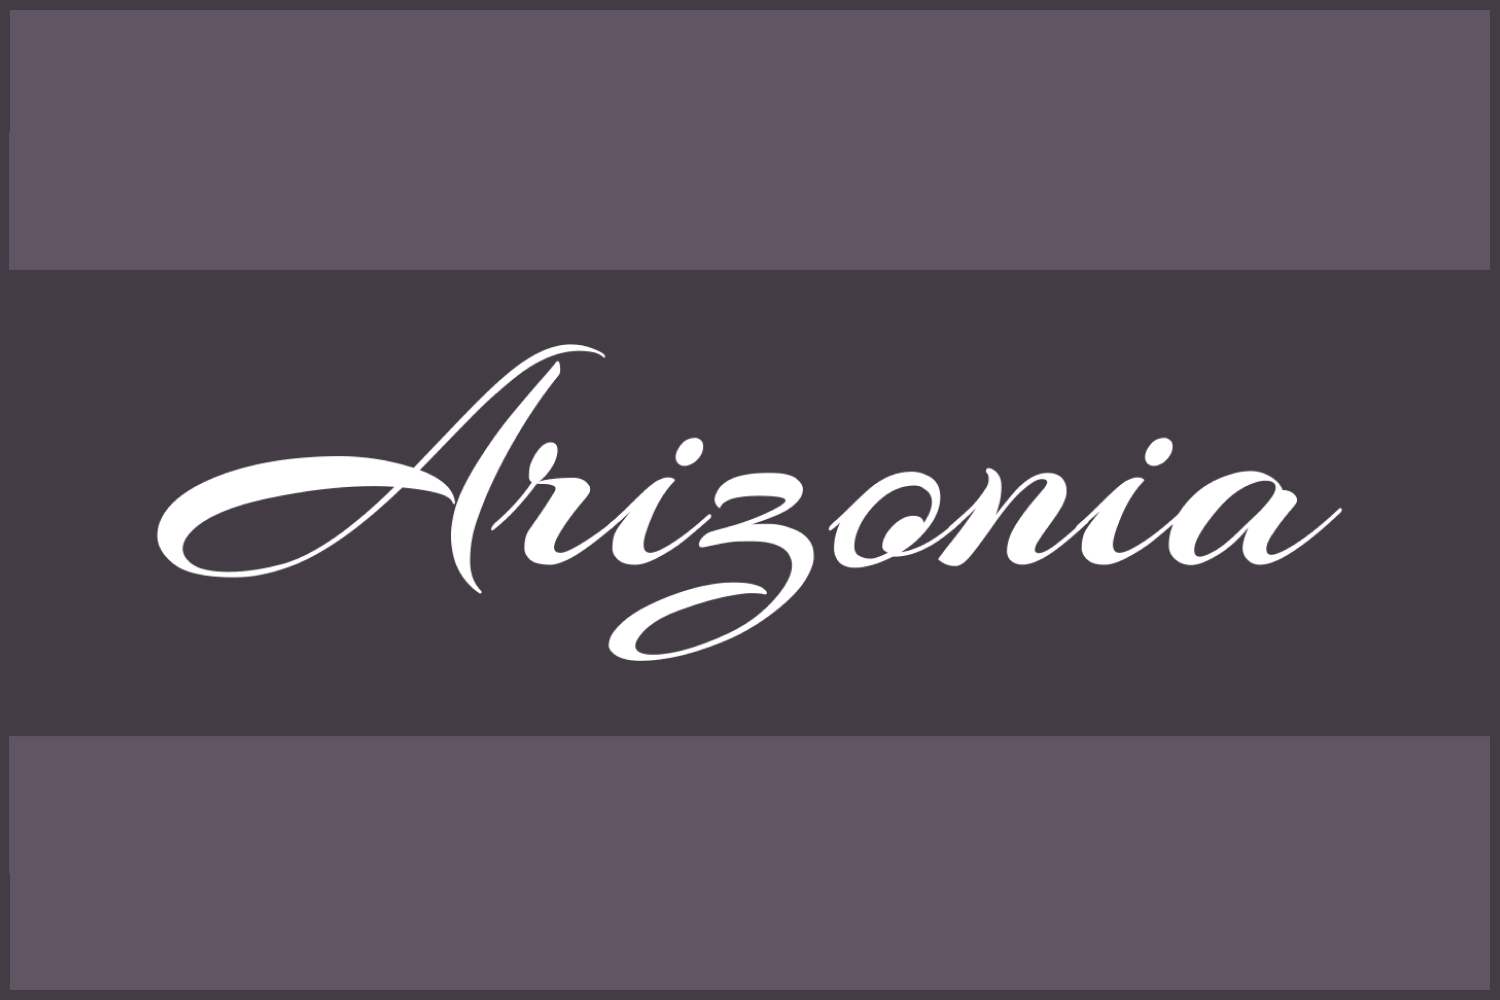 White text Arizonia on a gray background.